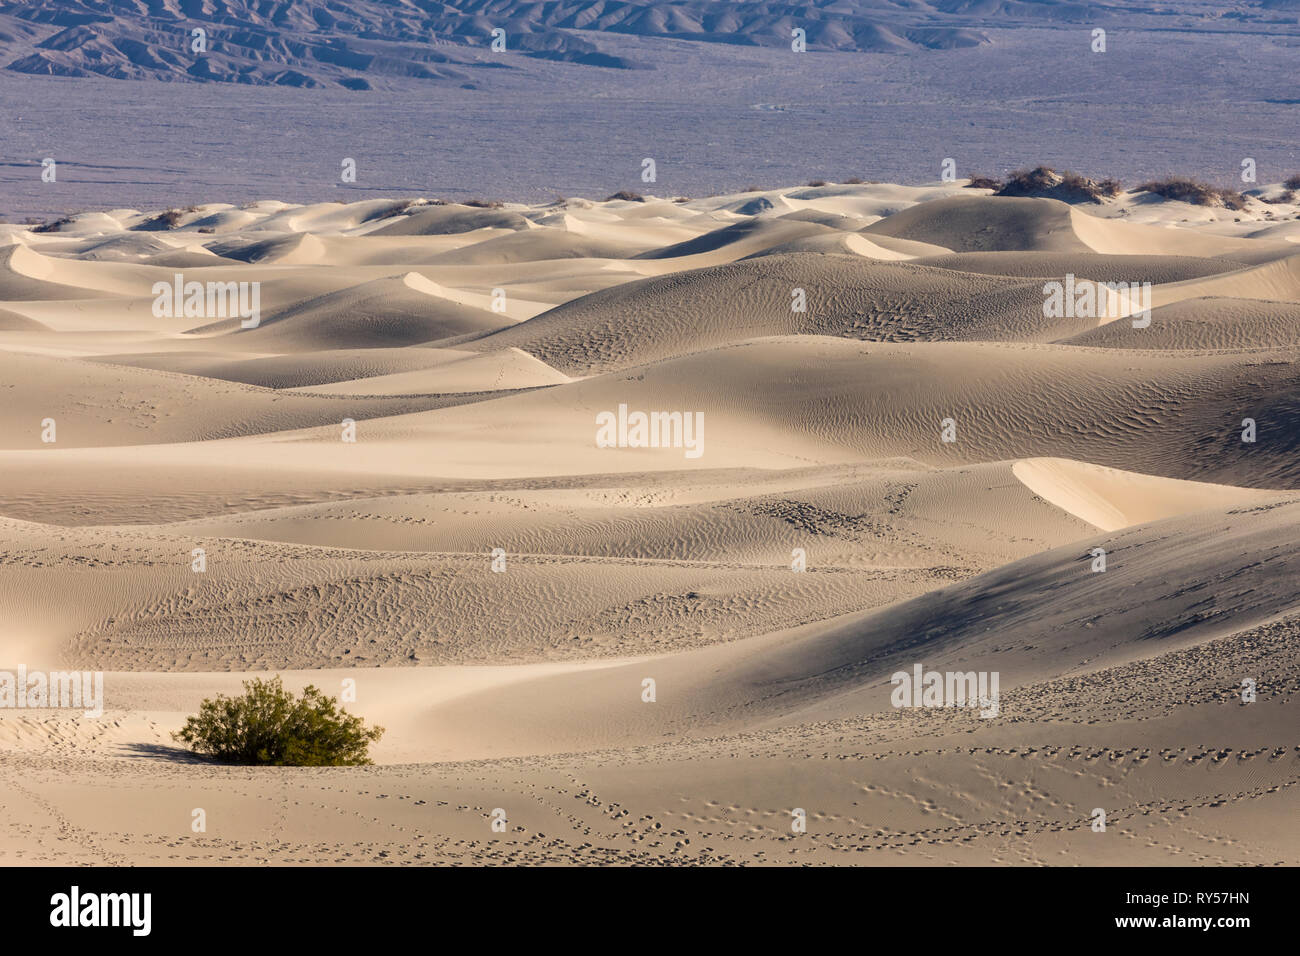 Mesquite Flat Sand Dunes ist ein ausgedehntes Gebiet mit berggesäumten Sanddünen im Death Valley und ein beliebtes Touristenziel für Wanderer und Fotografen. Stockfoto